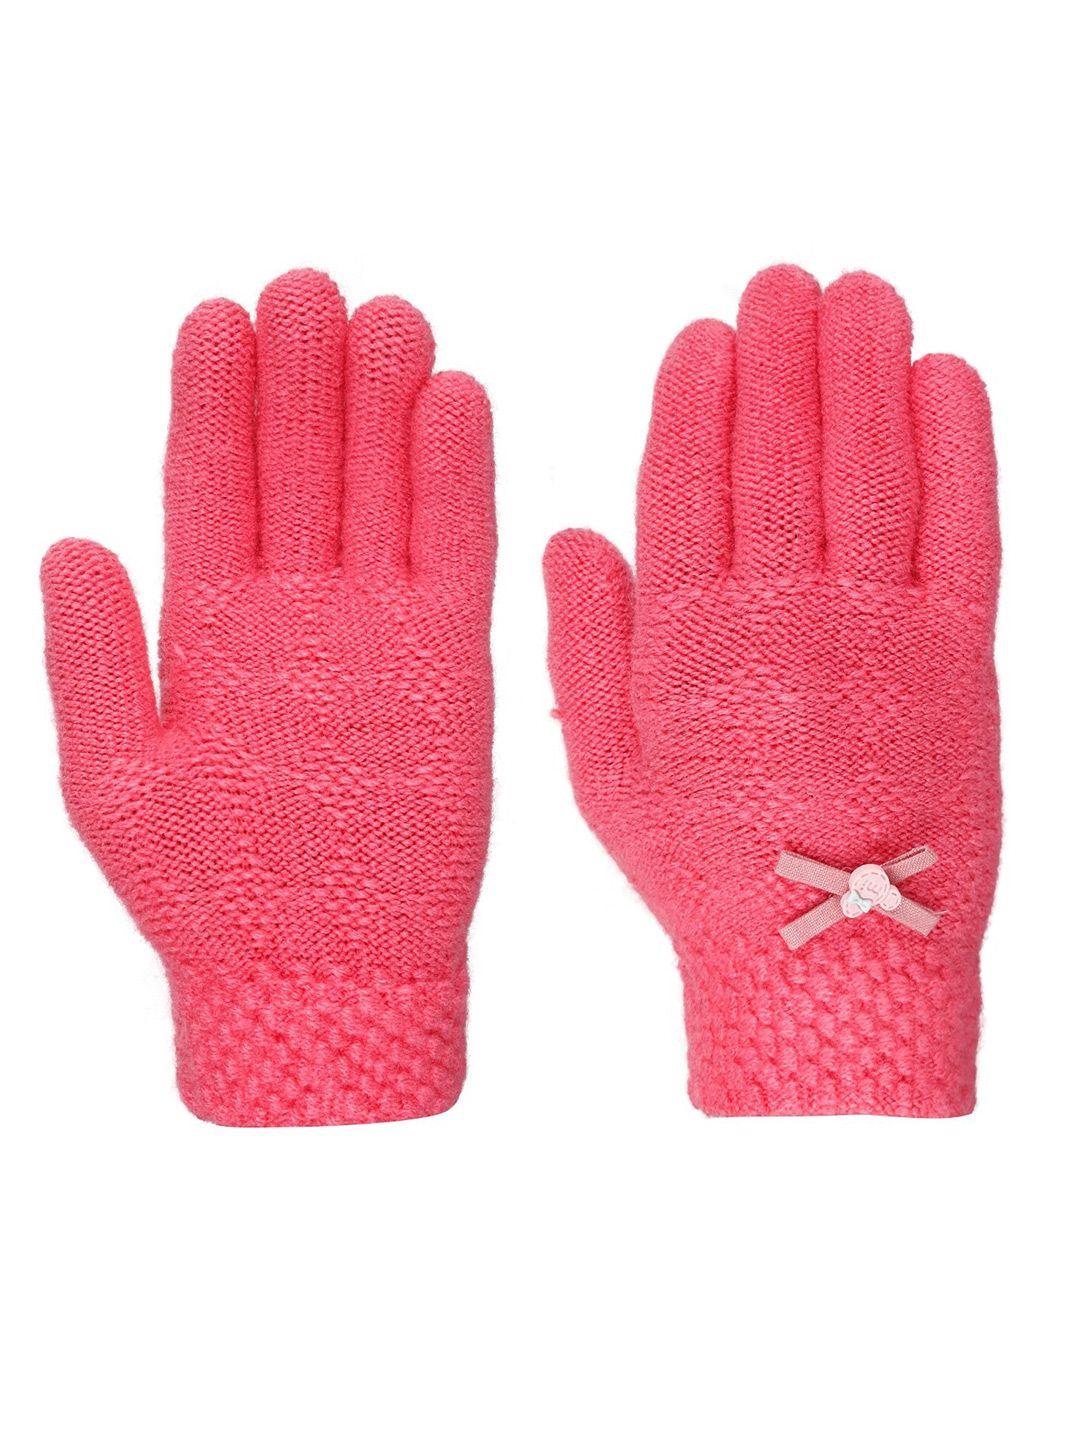 fabseasons kids patterned winter pink gloves